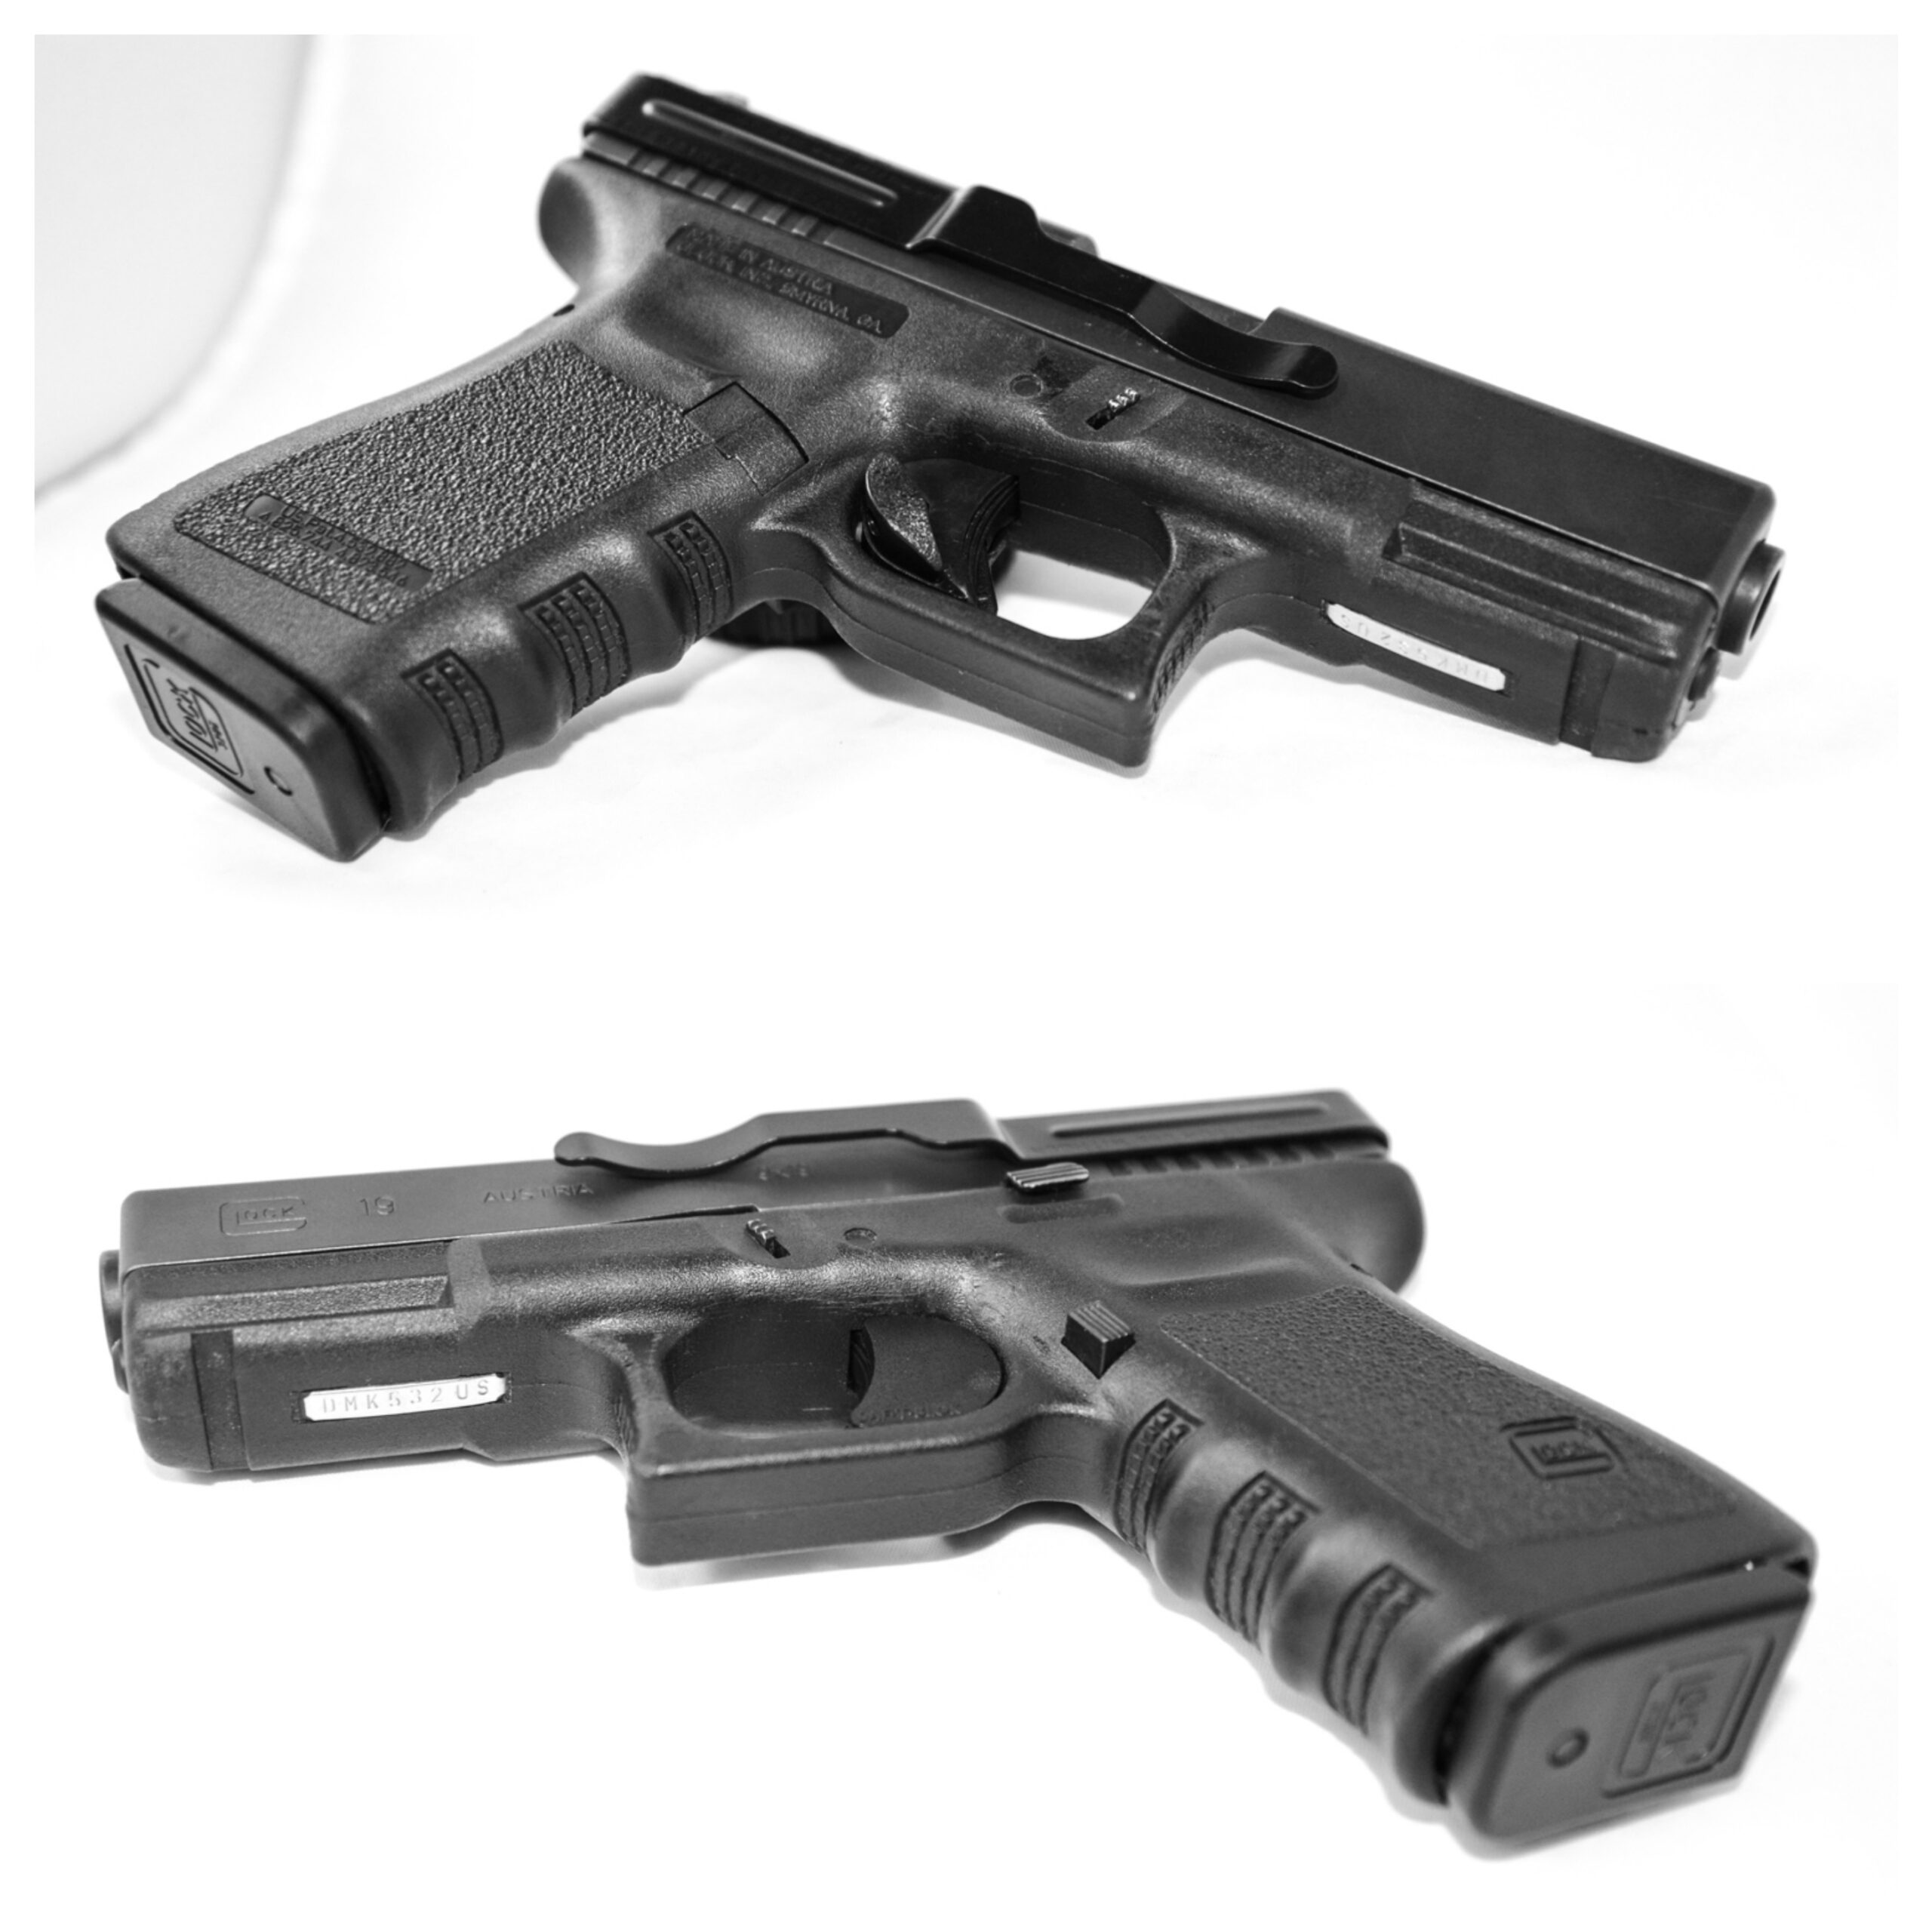 Glock 17 vs. glock 19